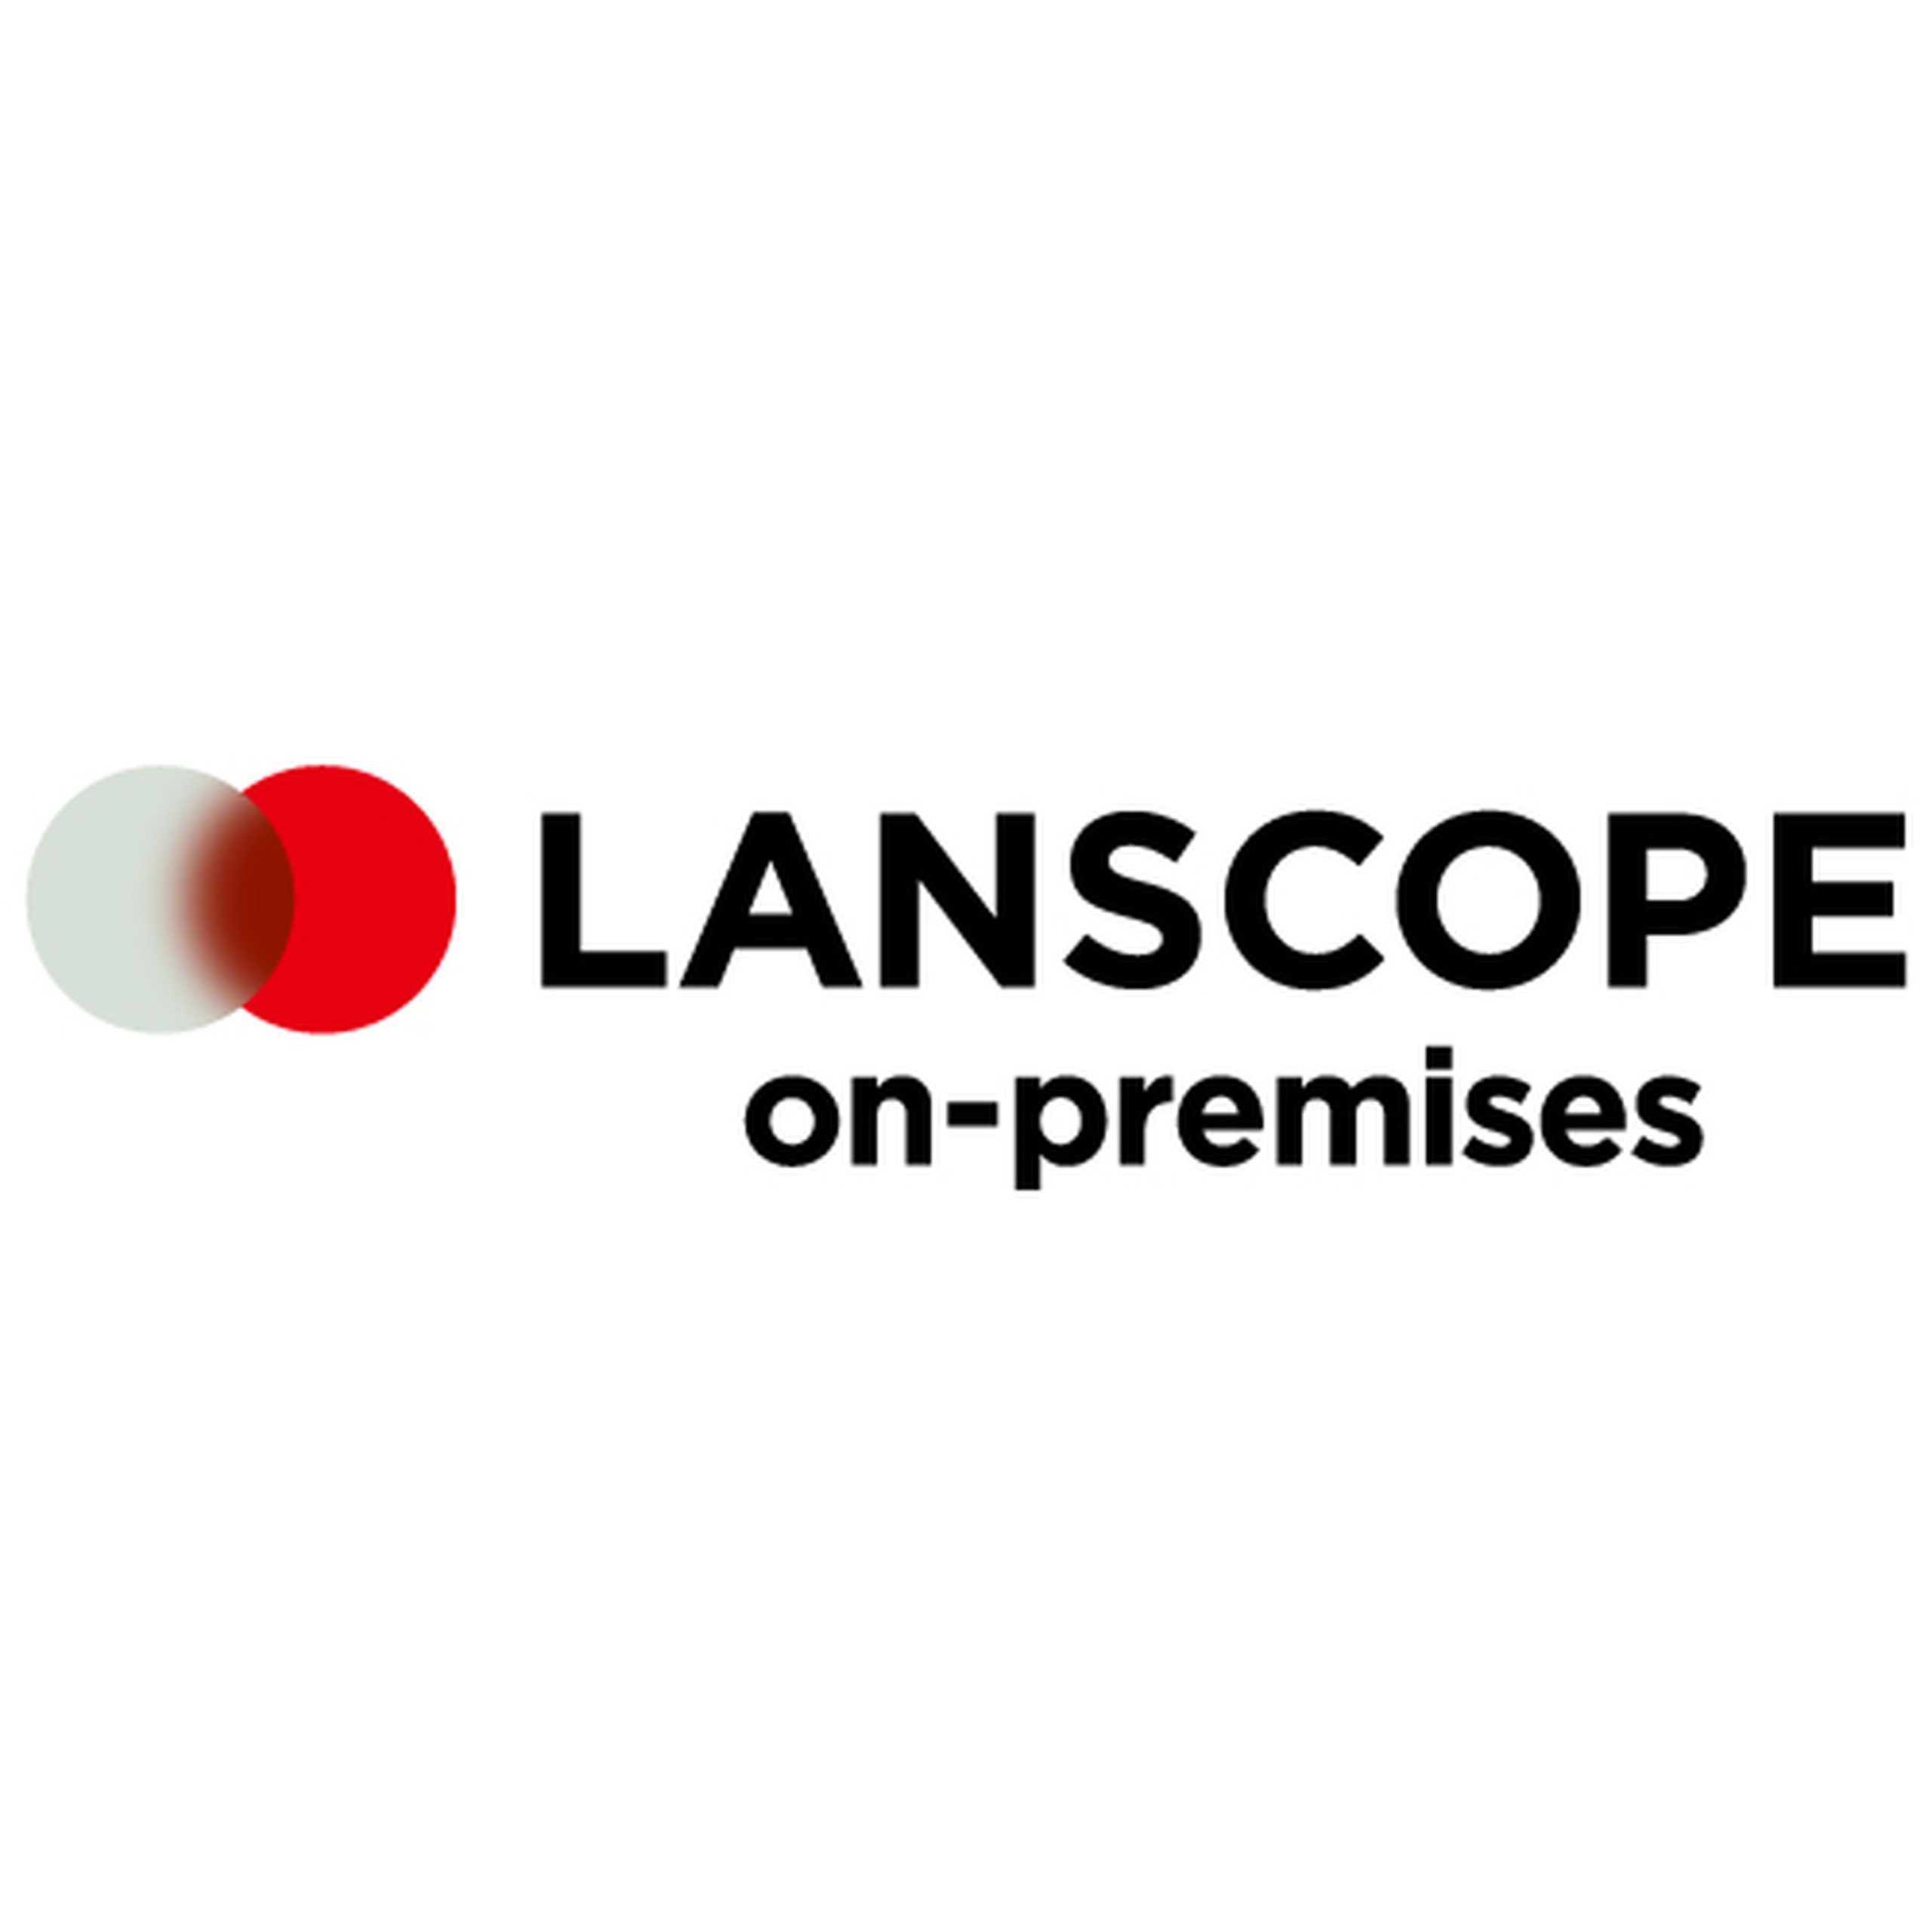 統合型エンドポイントマネジメントツール LANSCOPE